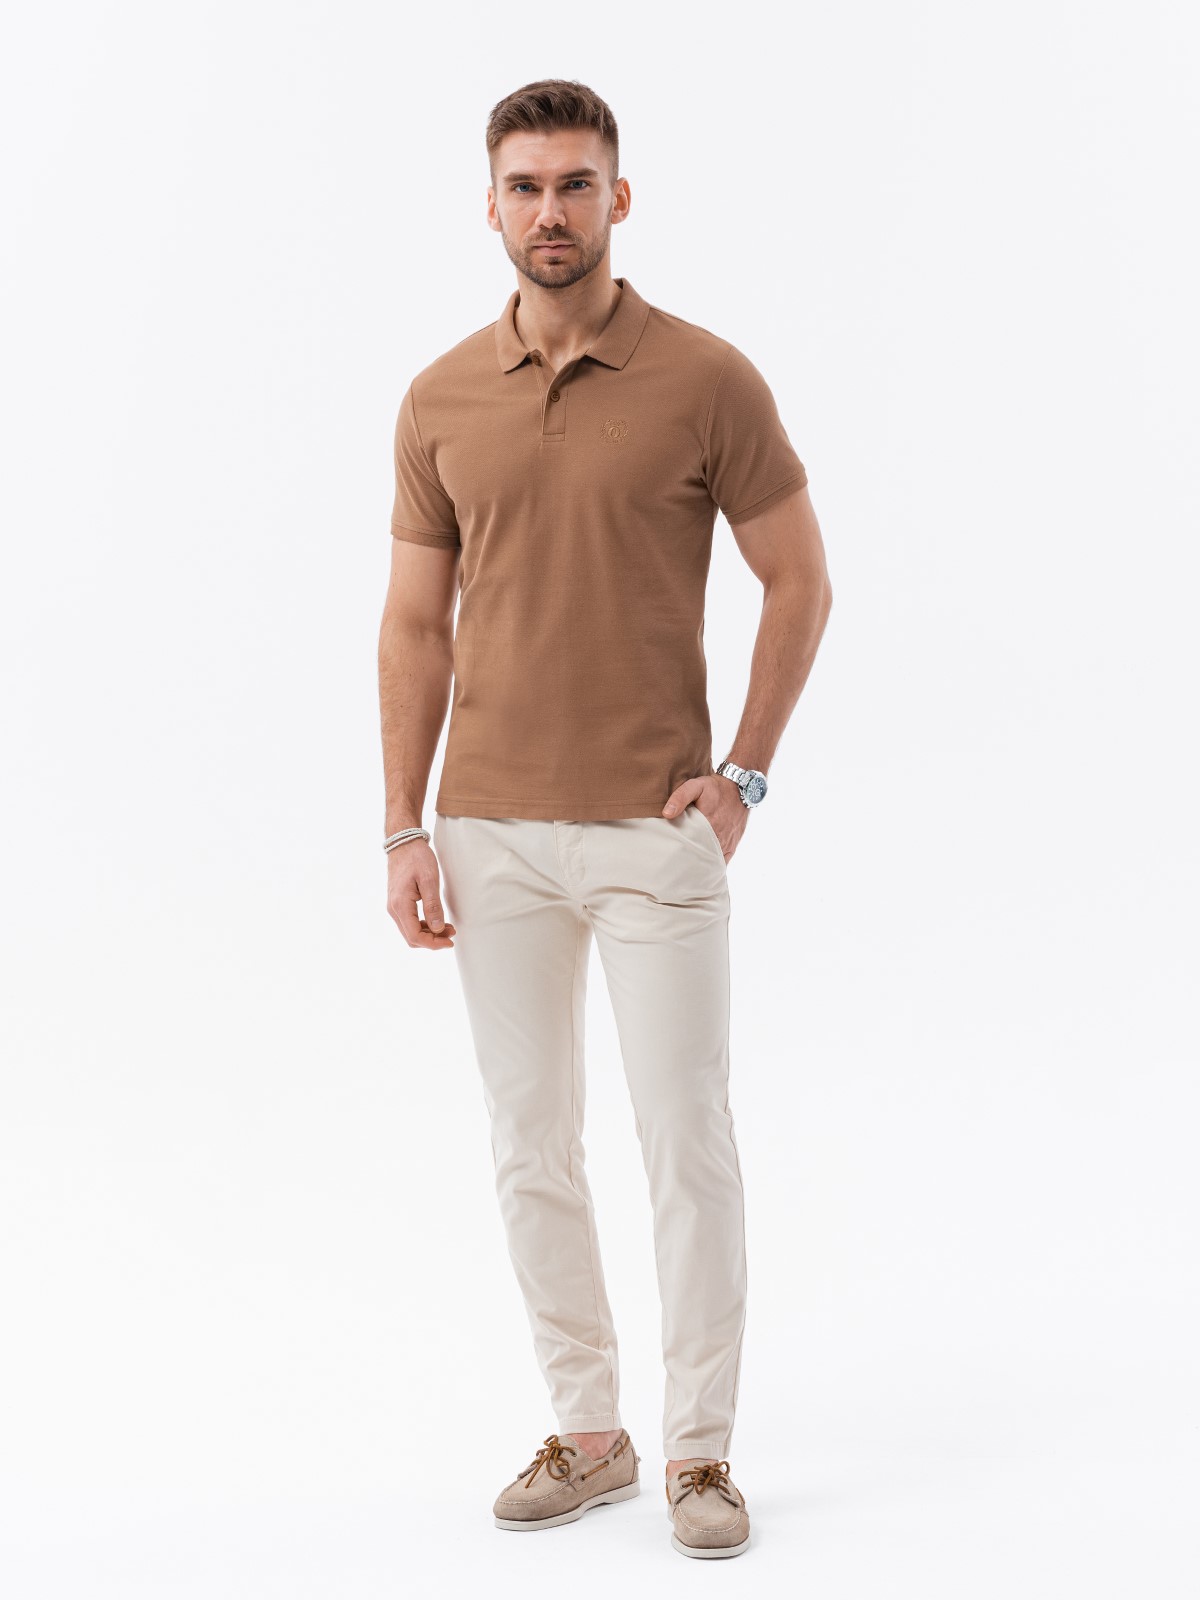 Polo shirt light brown